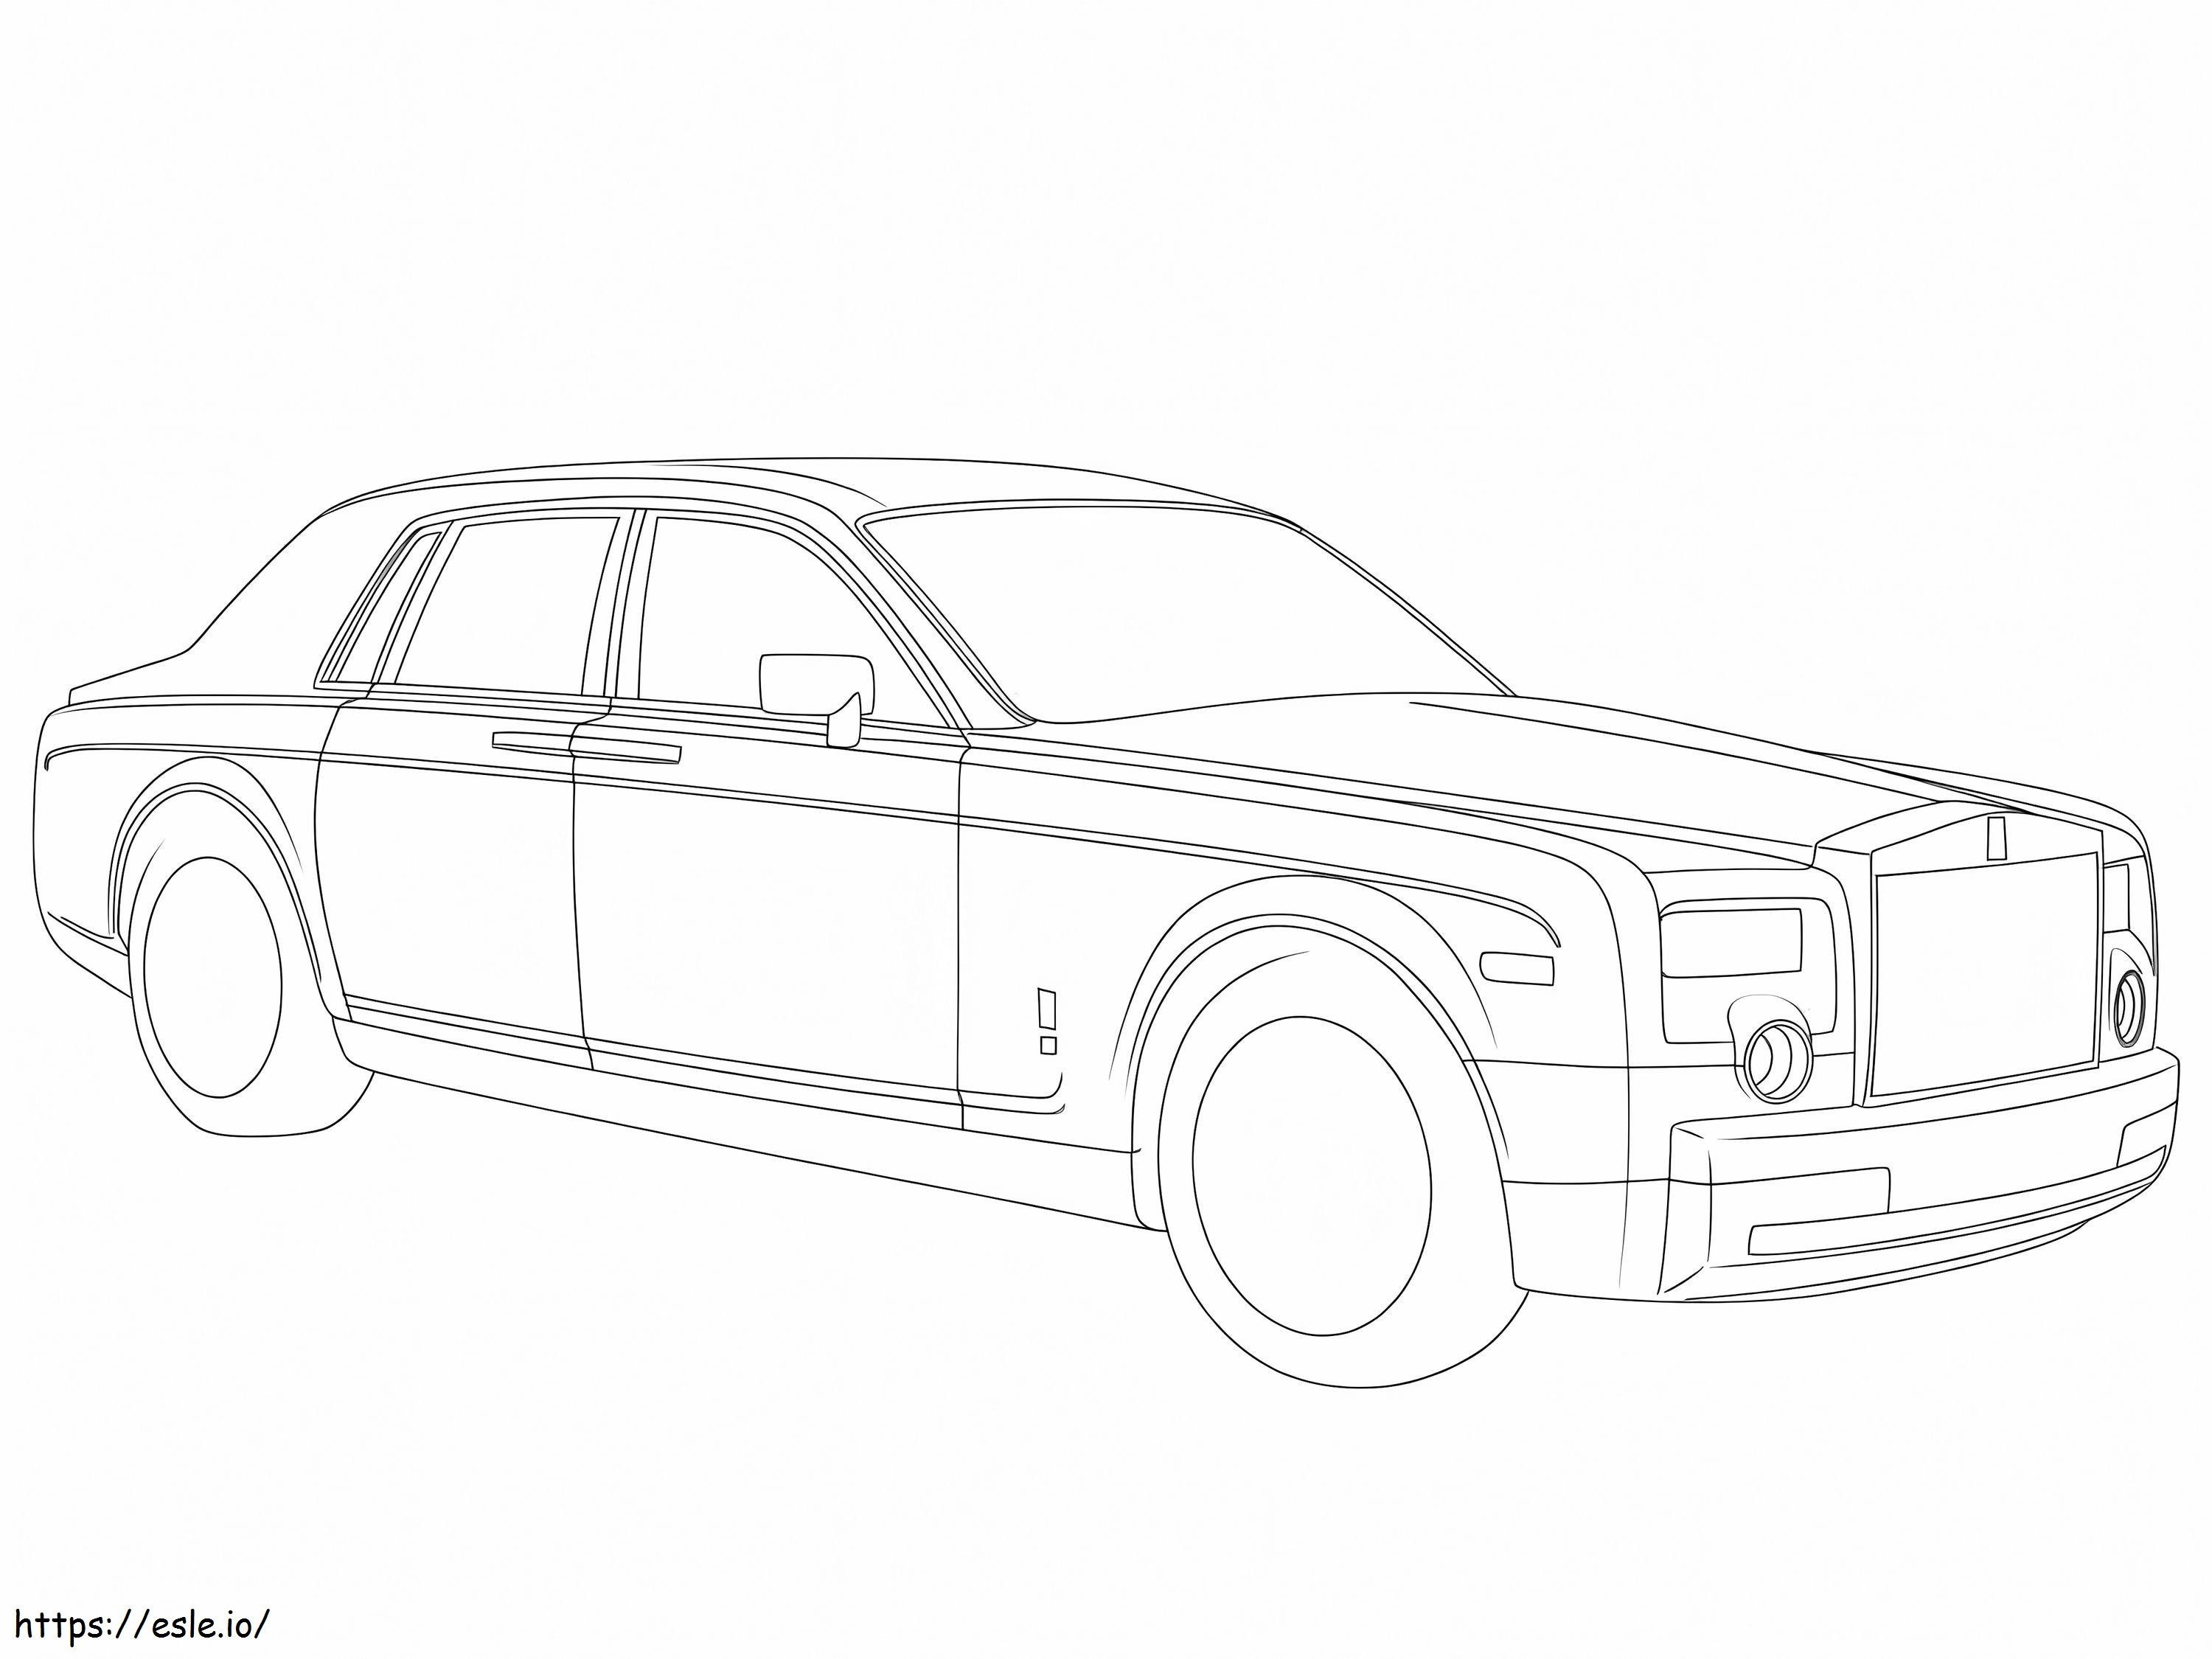 Baskı Rolls Royce boyama